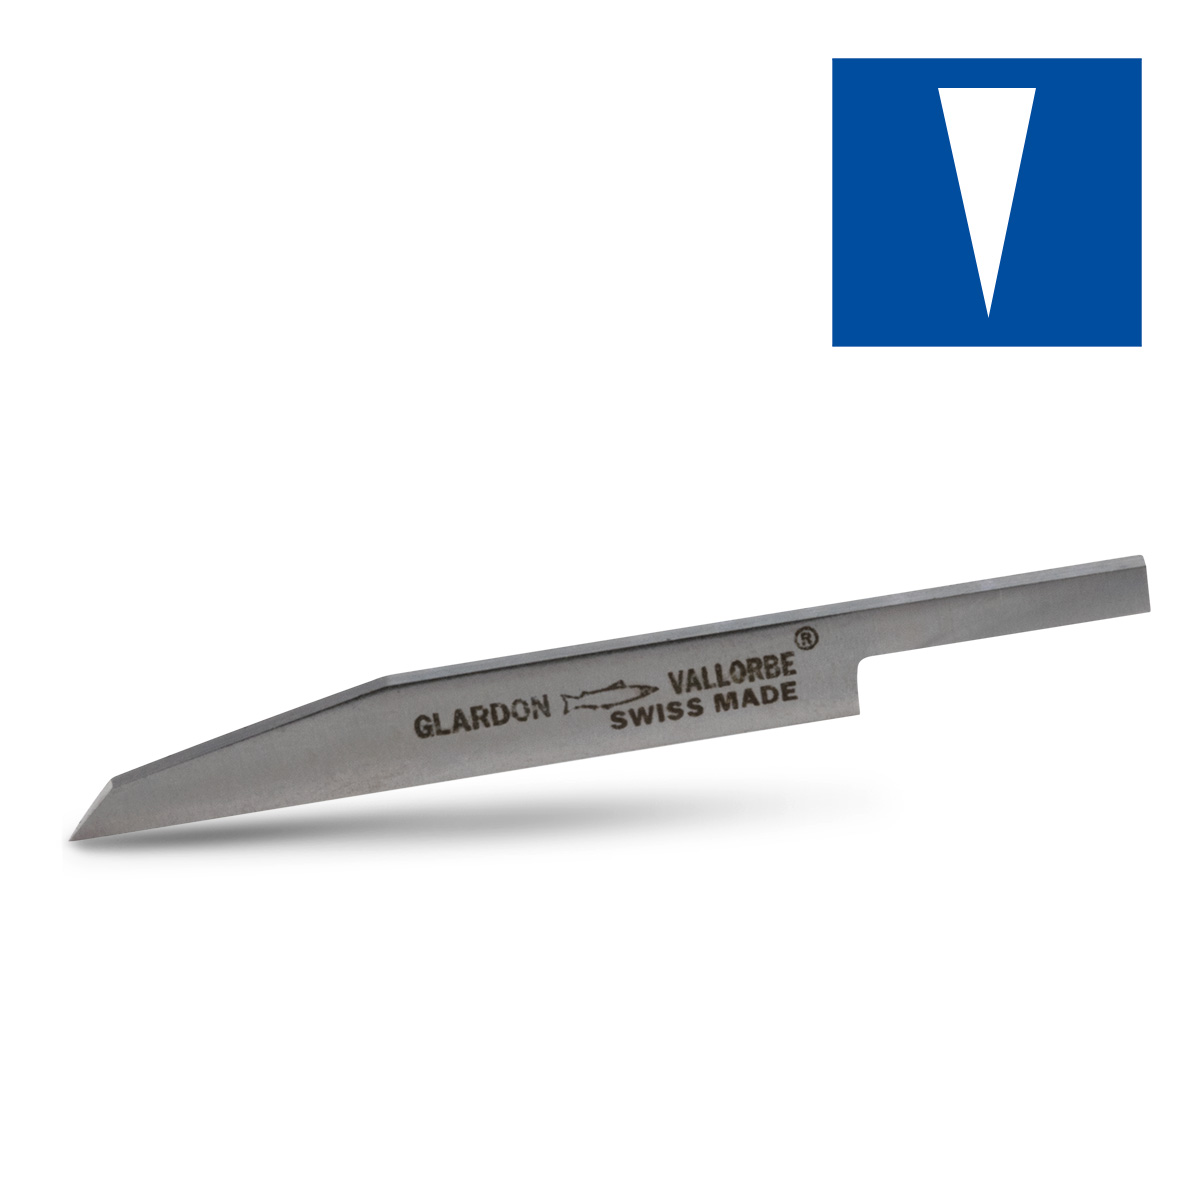 Echoppe en HSS, couteau, largeur 1,8 mm, longueur 55 mm, pour mandrin Ø 3,2 mm